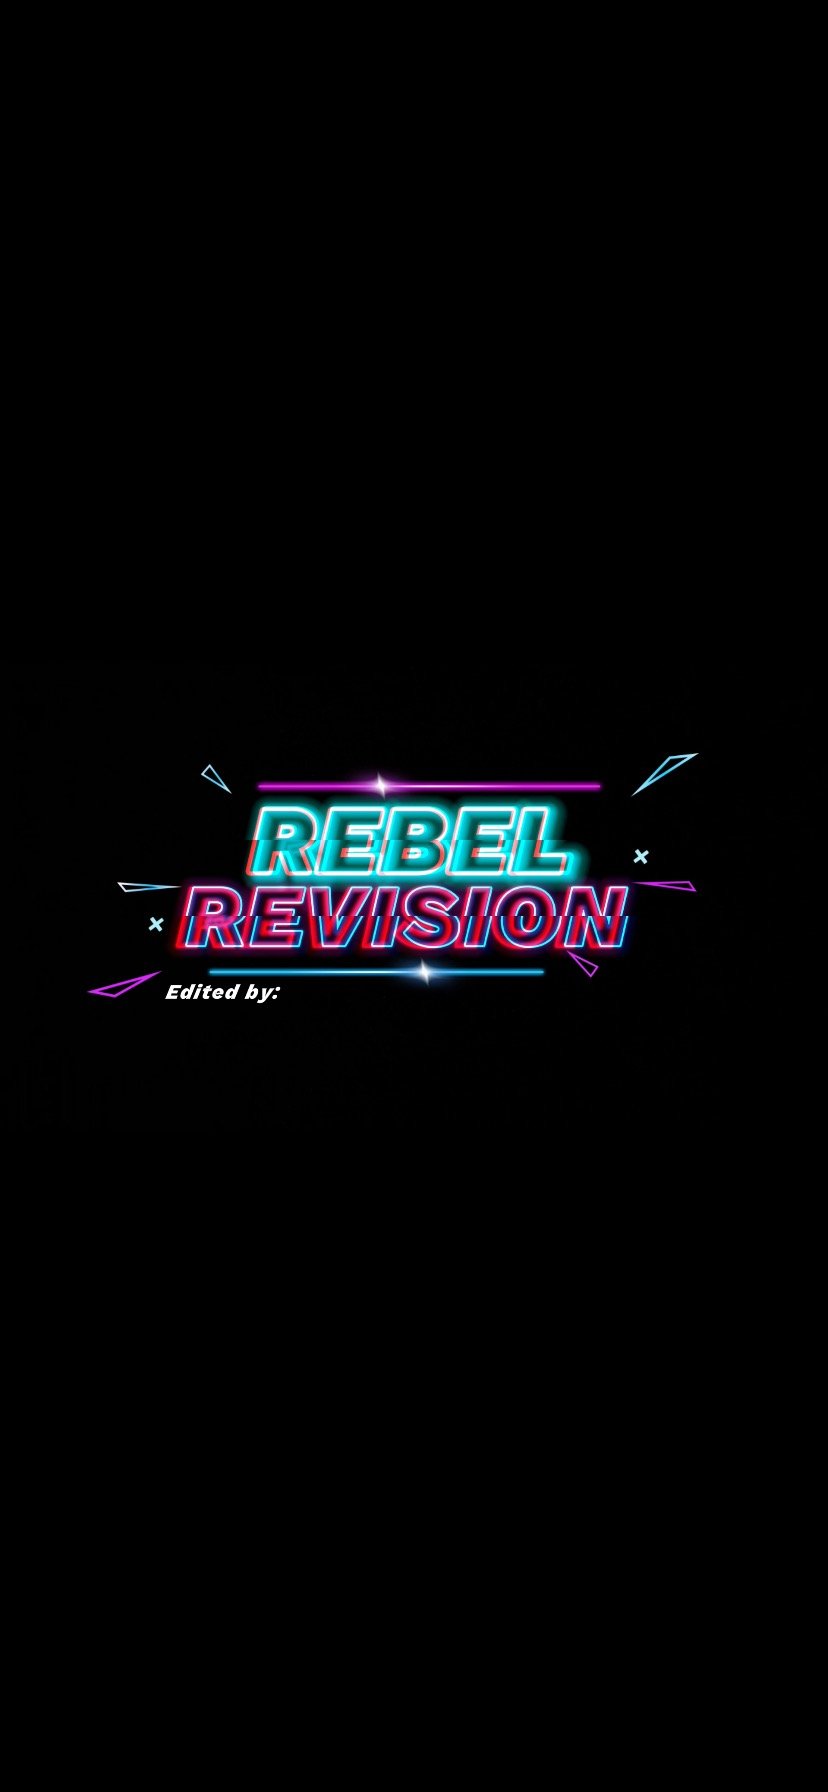 RebelRevsions.com